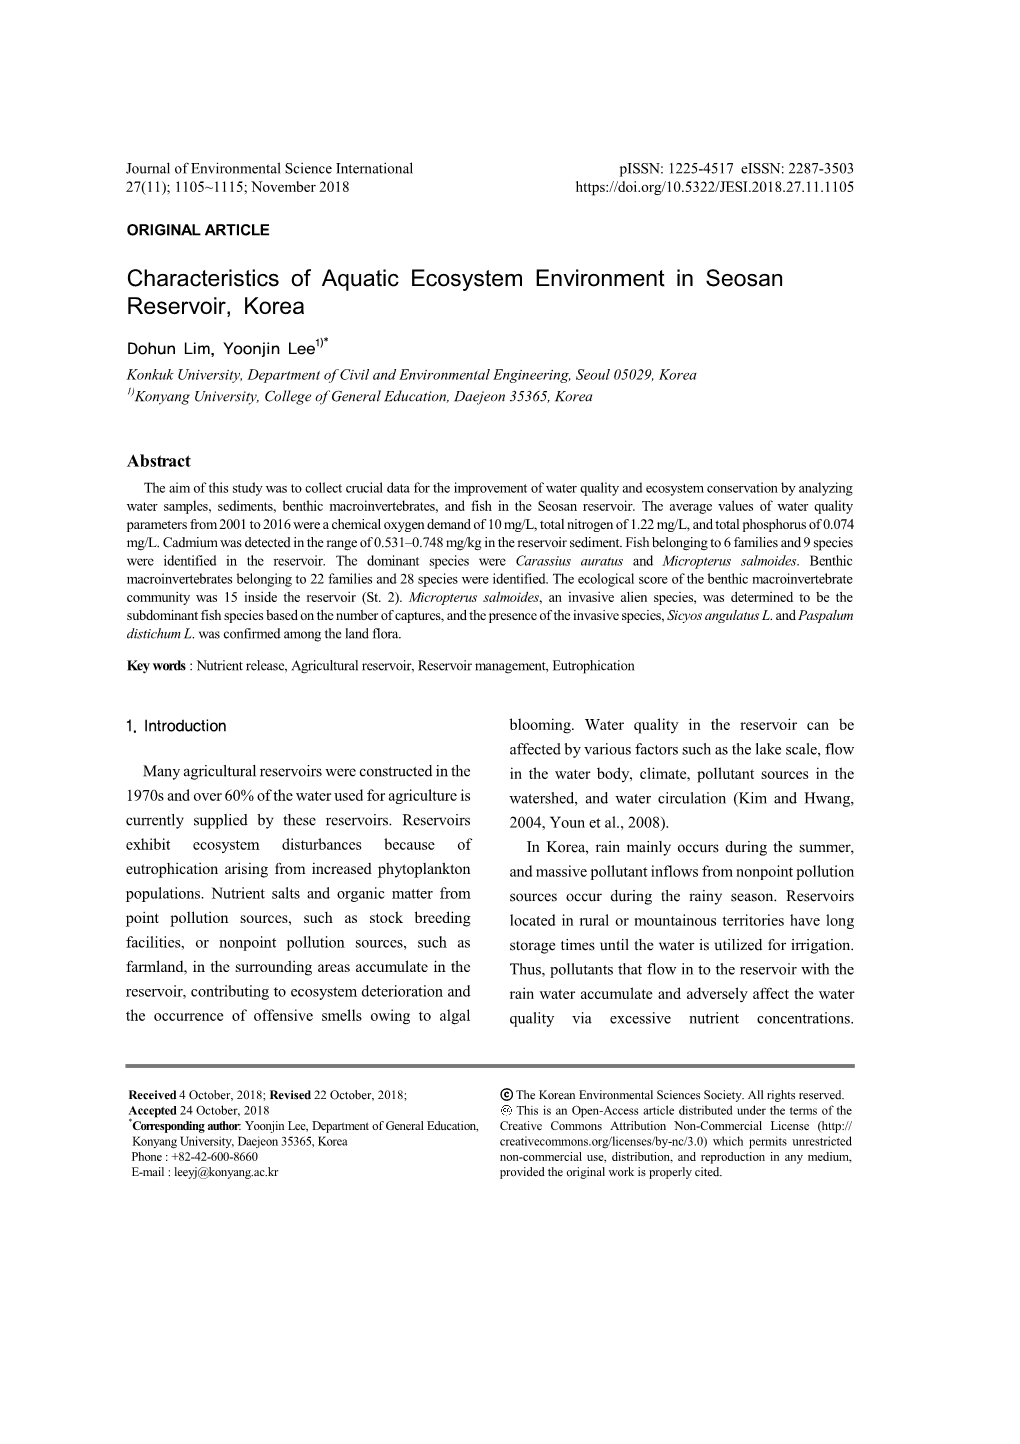 Characteristics of Aquatic Ecosystem Environment in Seosan Reservoir, Korea